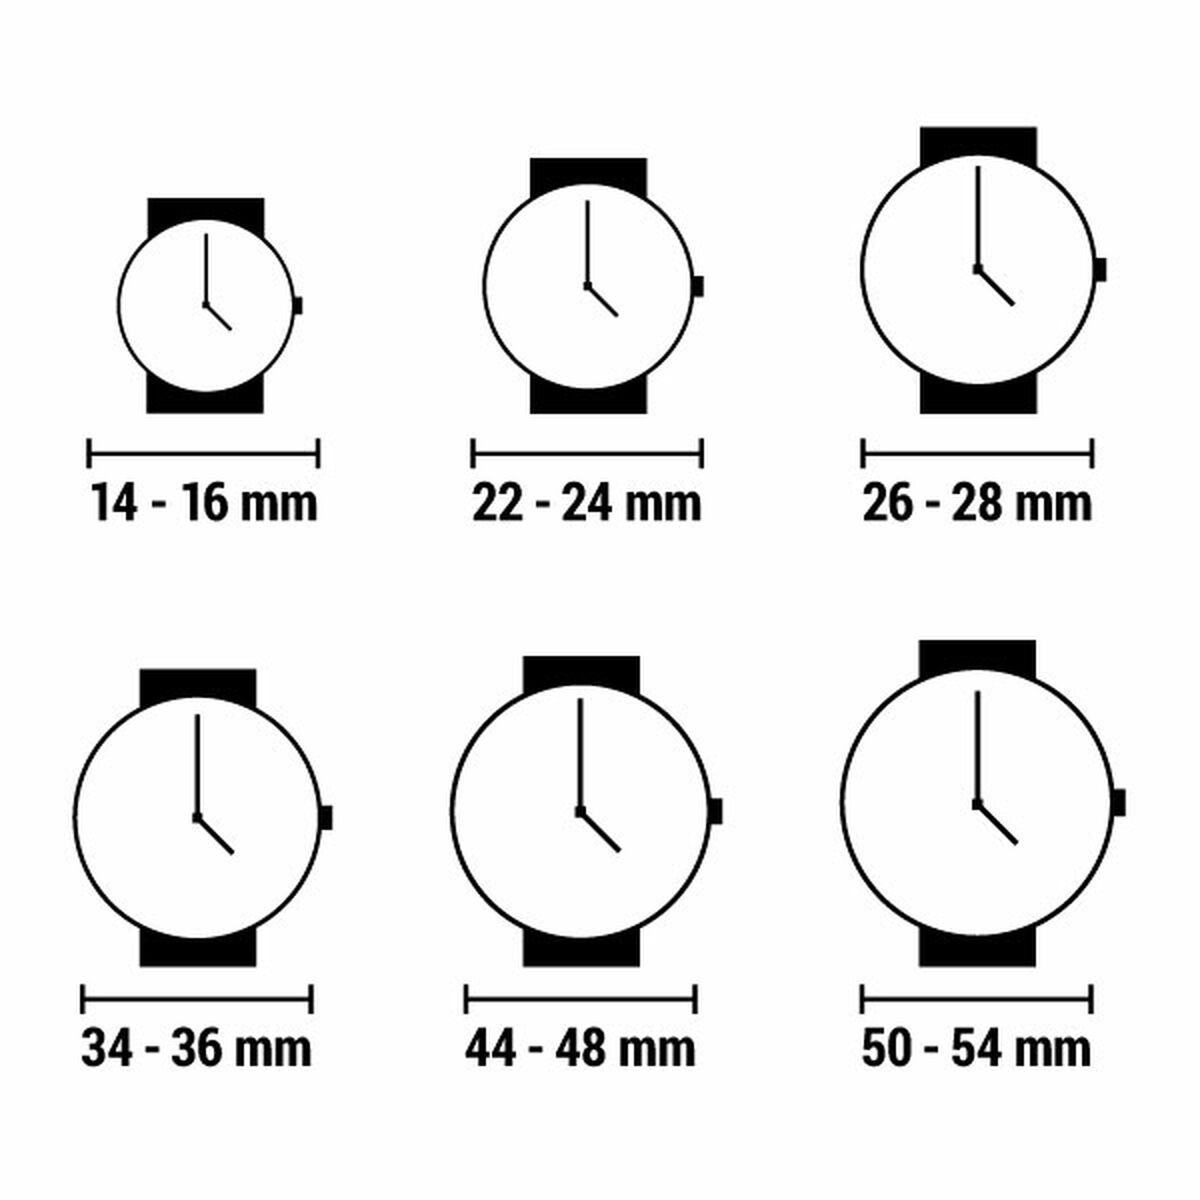 Horloge Heren Guess (Ø 42 mm)